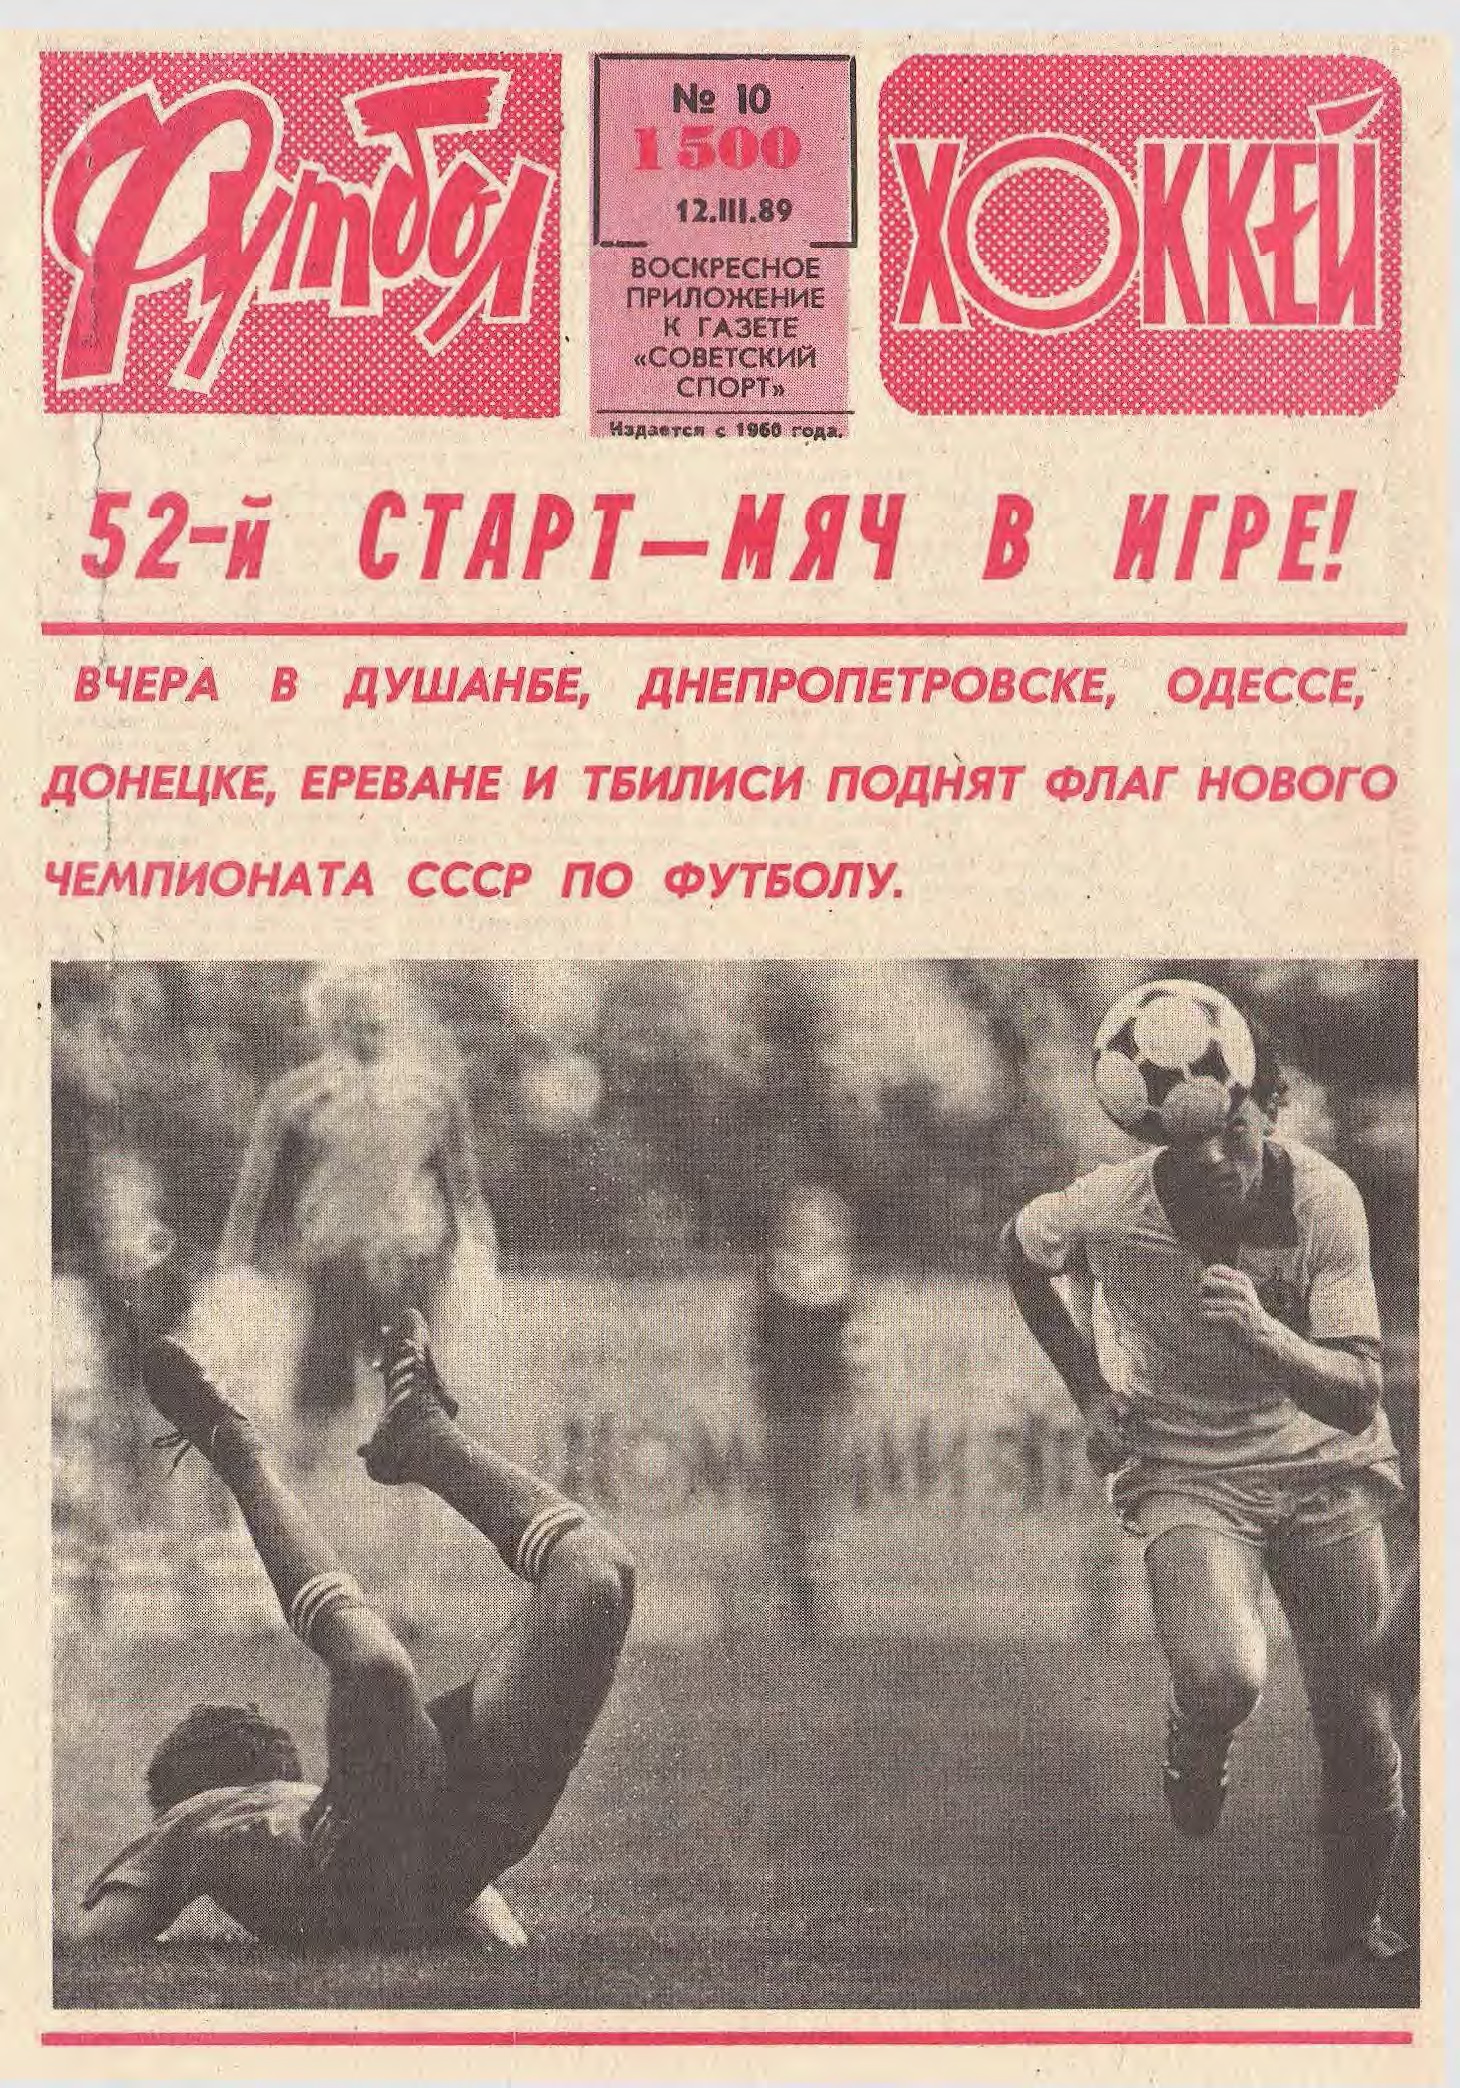 «Спартак» – чемпион, побег Могильного в США, Черчесов заменил Дасаева. 1989 год в обложках еженедельника «Футбол»